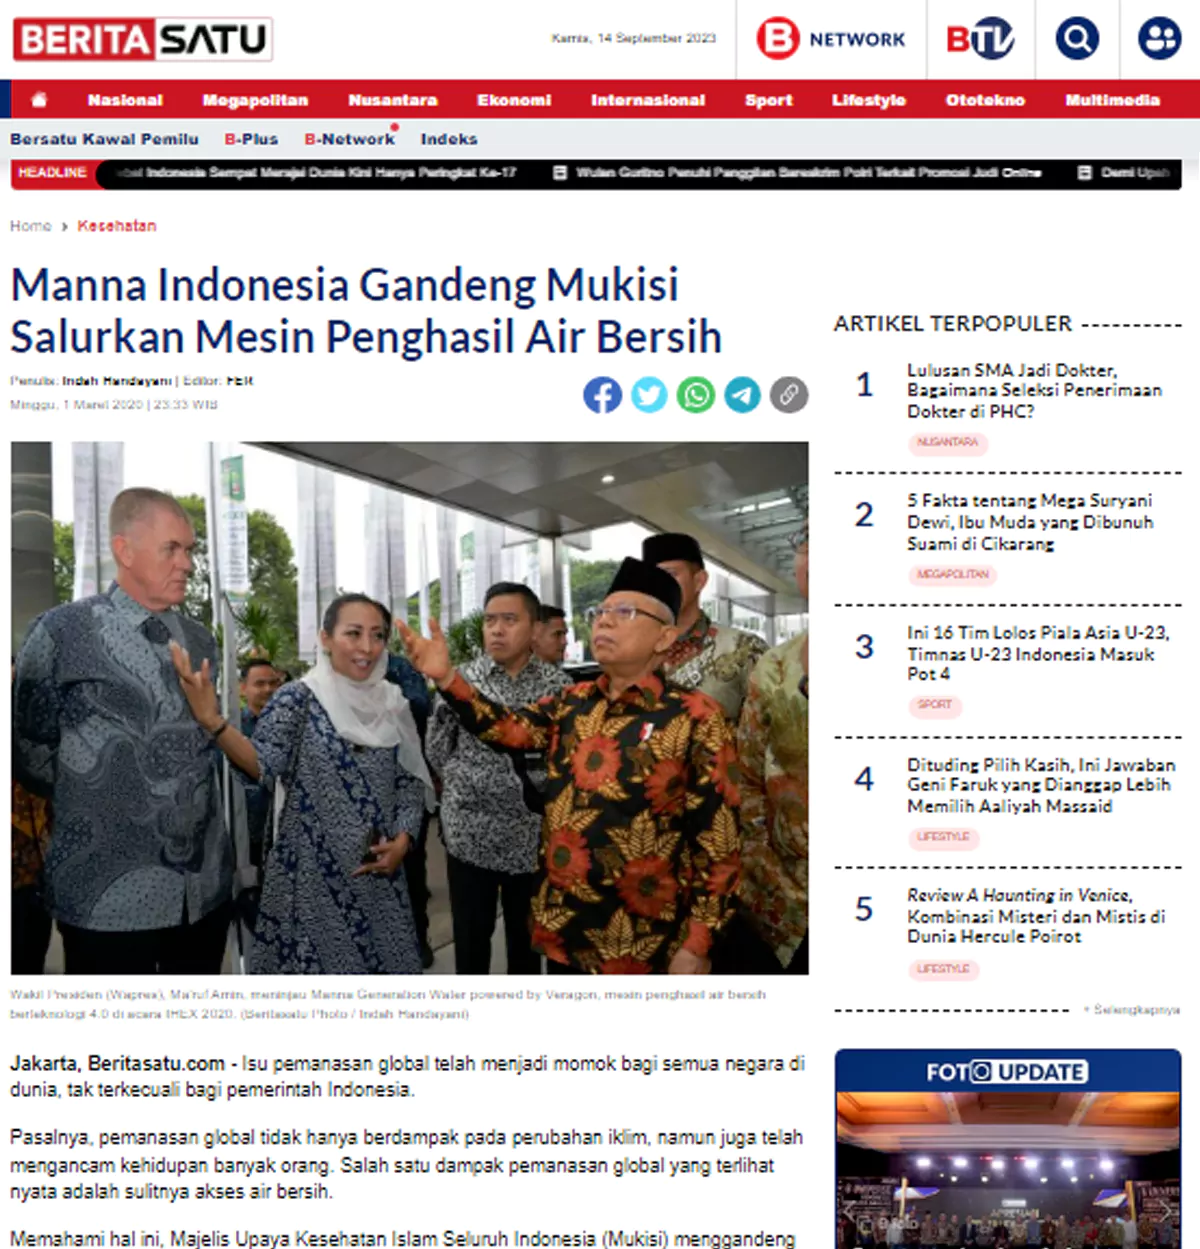 manna indonesia menggandeng mukisi untuk salurkan air bersih